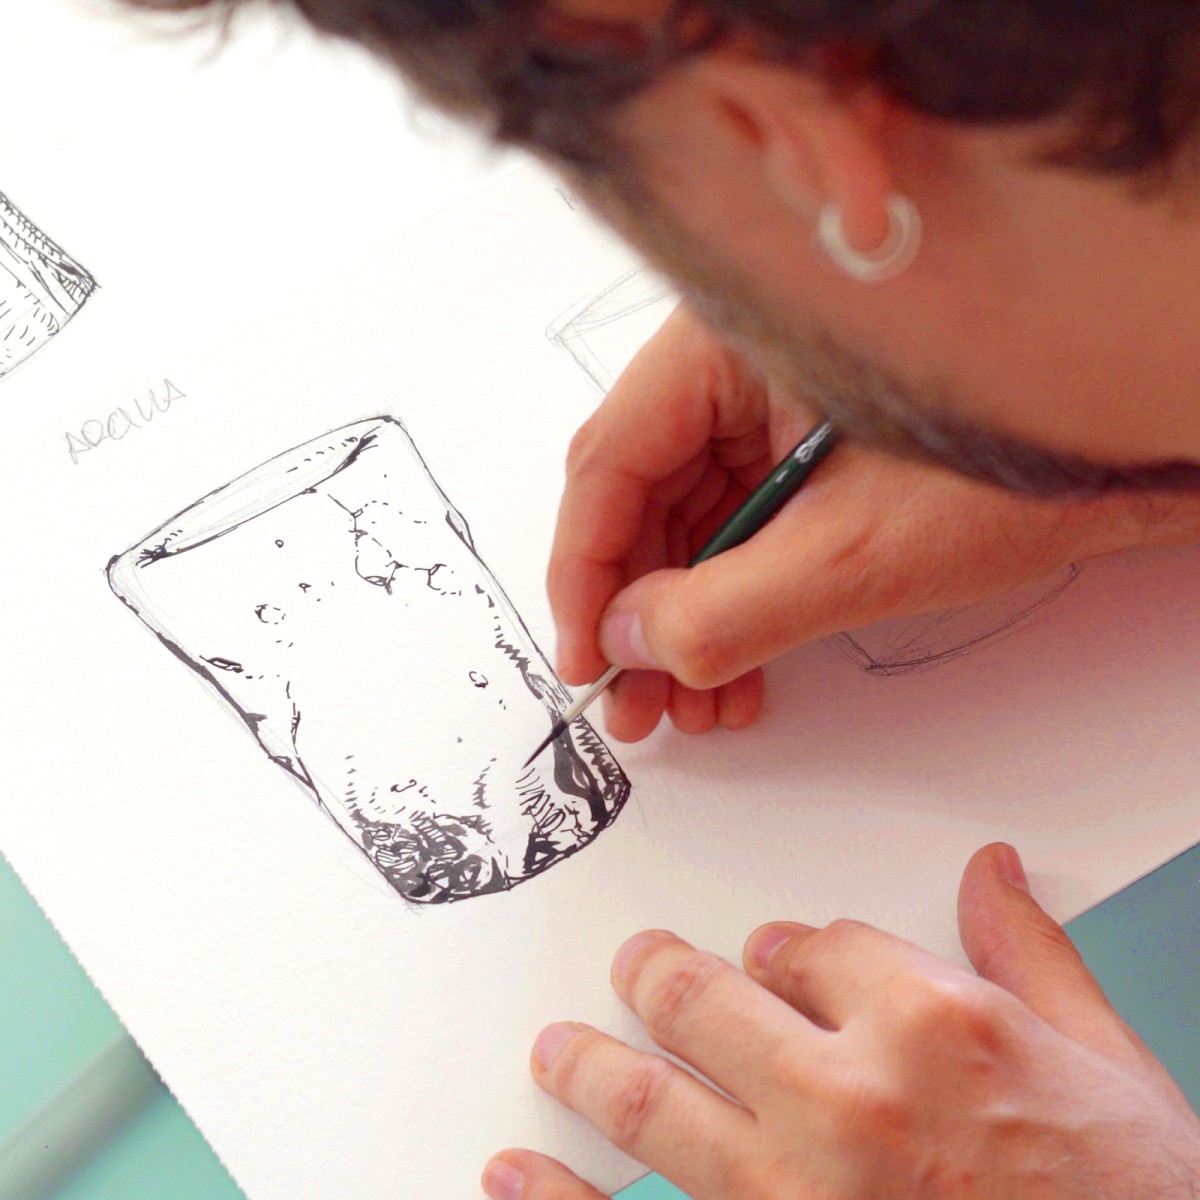 Tutorial Ilustración: cómo dibujar texturas con tinta china | Domestika